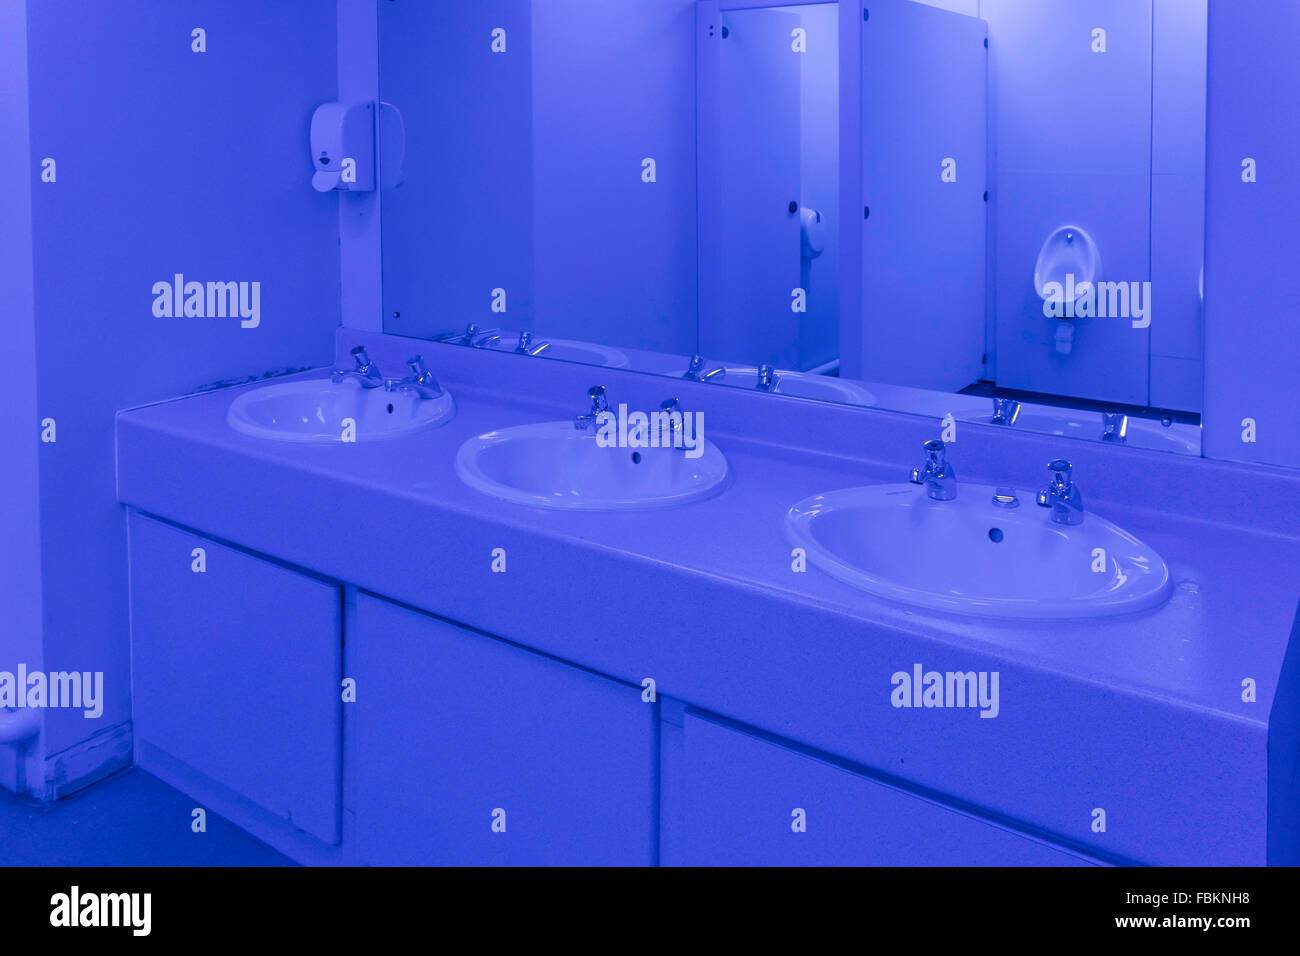 Waschraum in ein Gentlemen öffentlichen Bequemlichkeit mit blauem Licht beleuchtet, um Drogenmissbrauch zu verhindern, indem Sie verhindern, dass Benutzer ihre Venen zu sehen Stockfoto